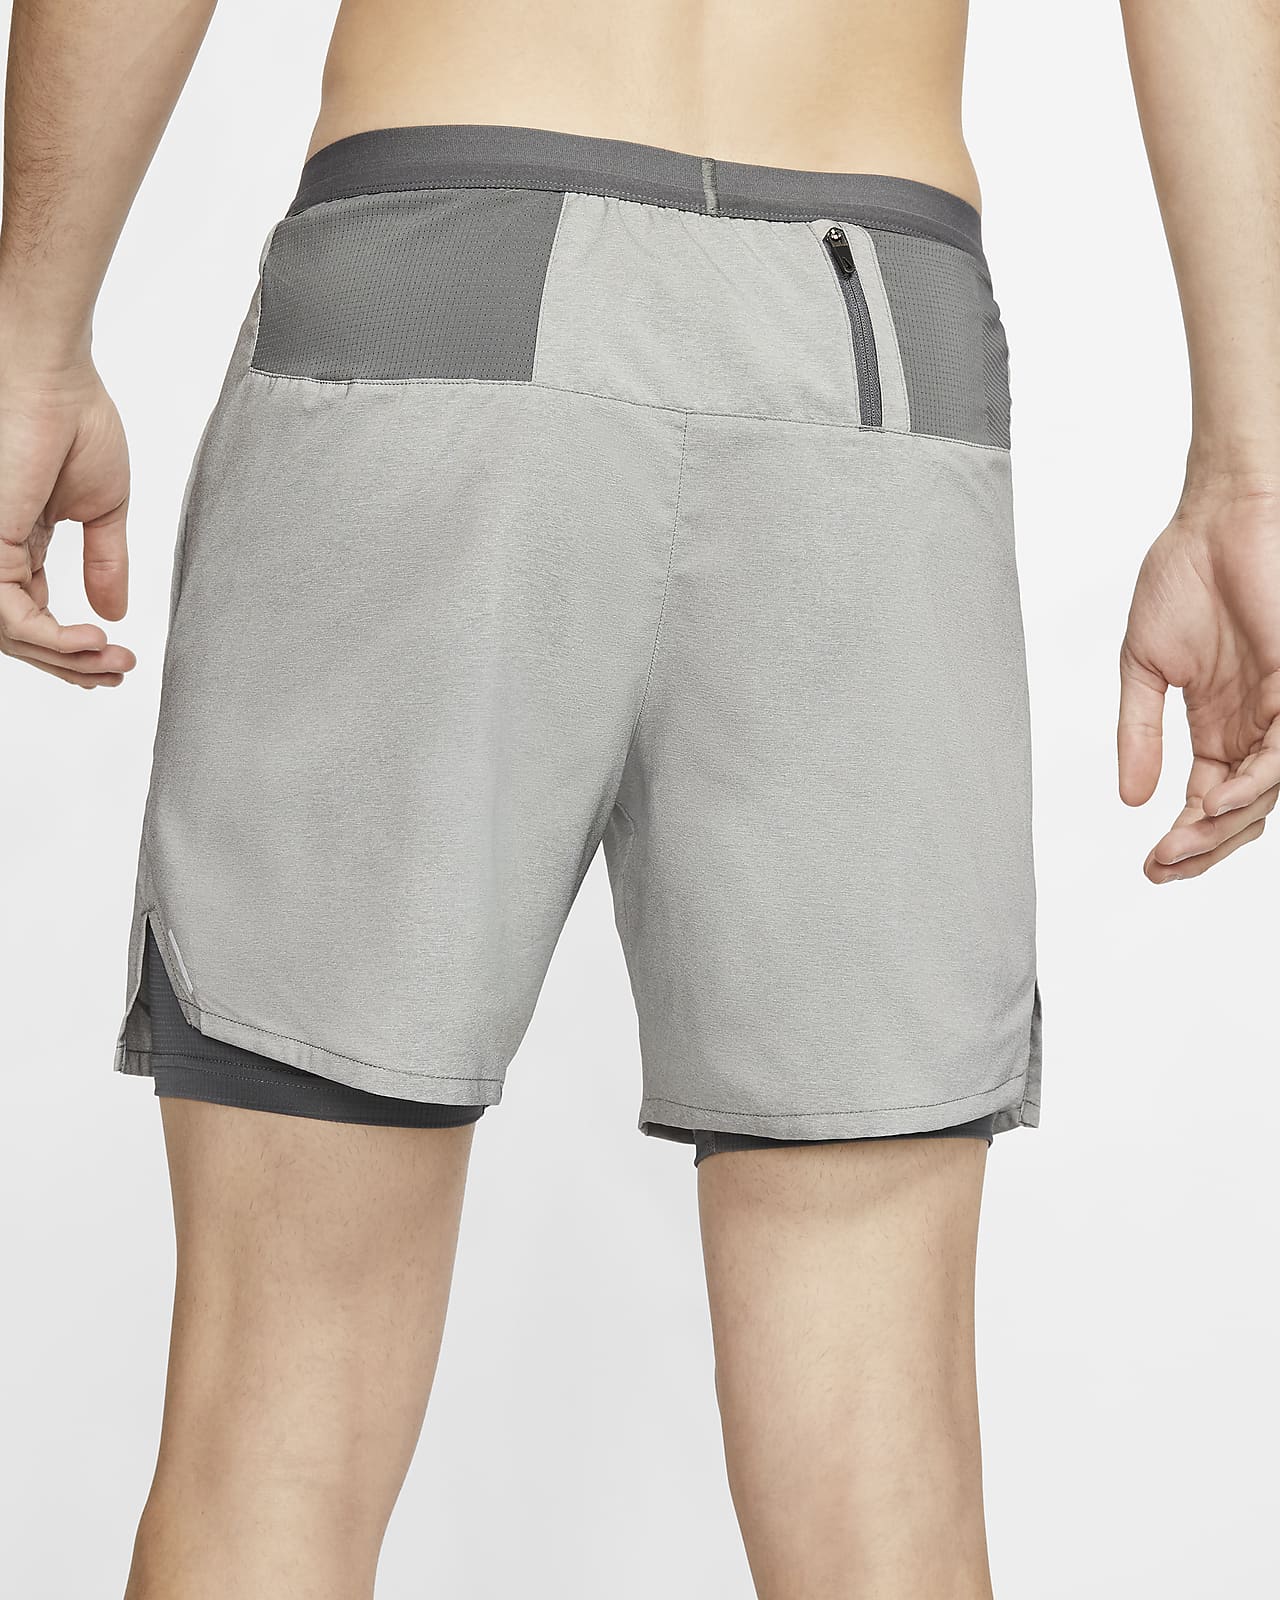 nike flex stride shorts grey 18cm